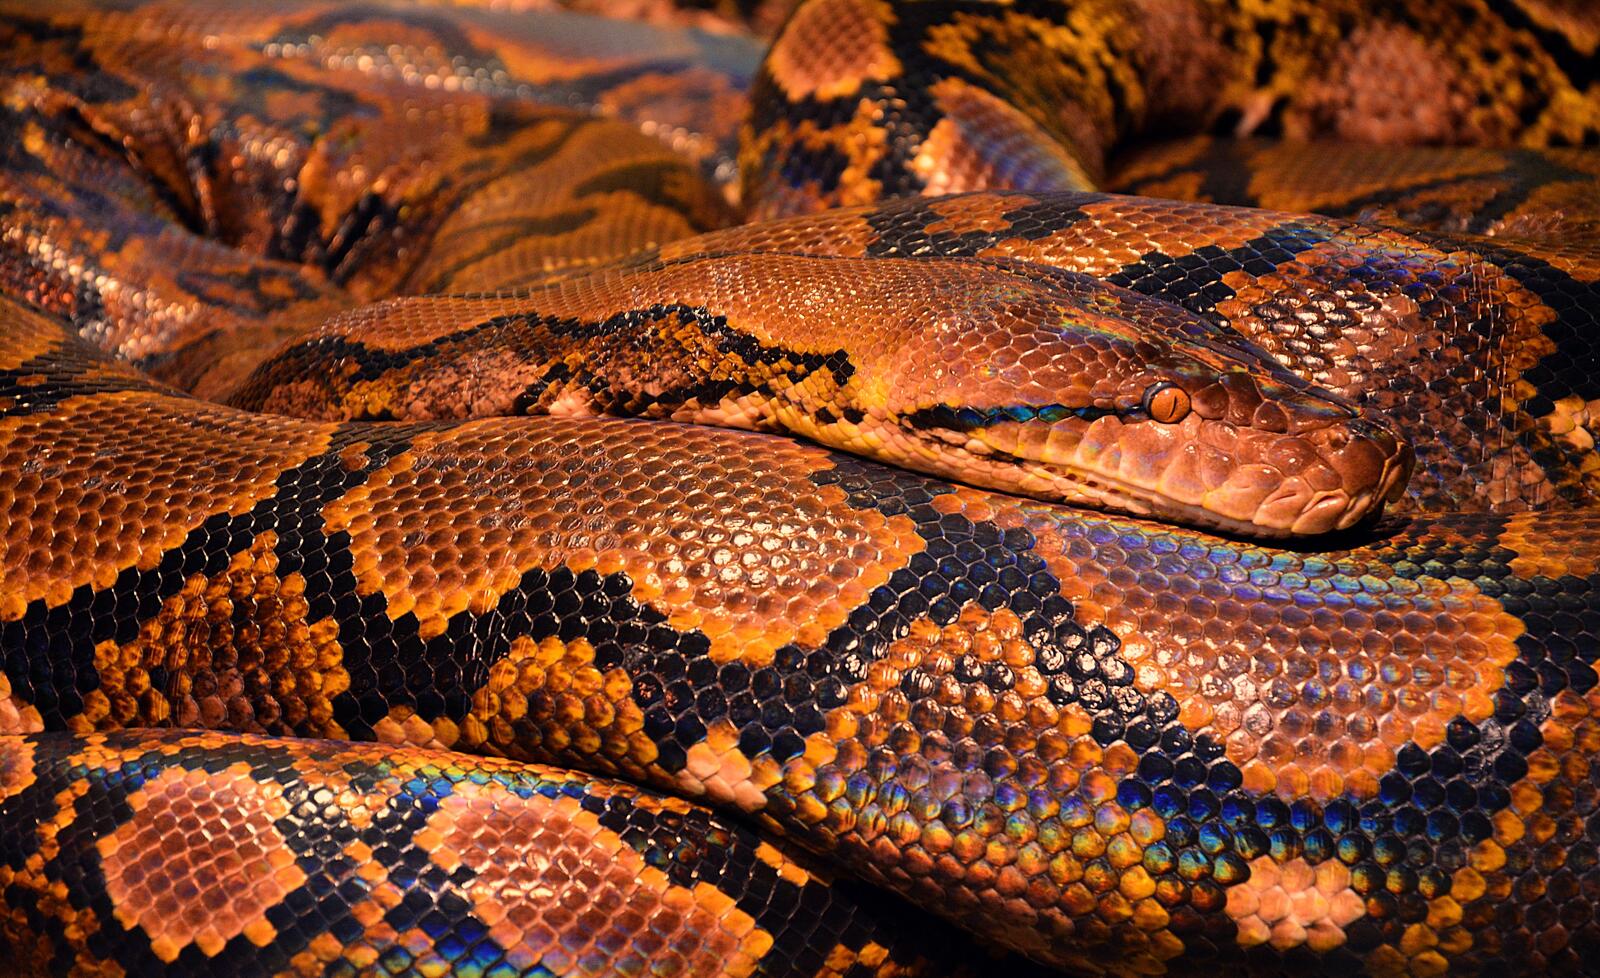 Бесплатное фото Змея коричневого цвета крупным планом